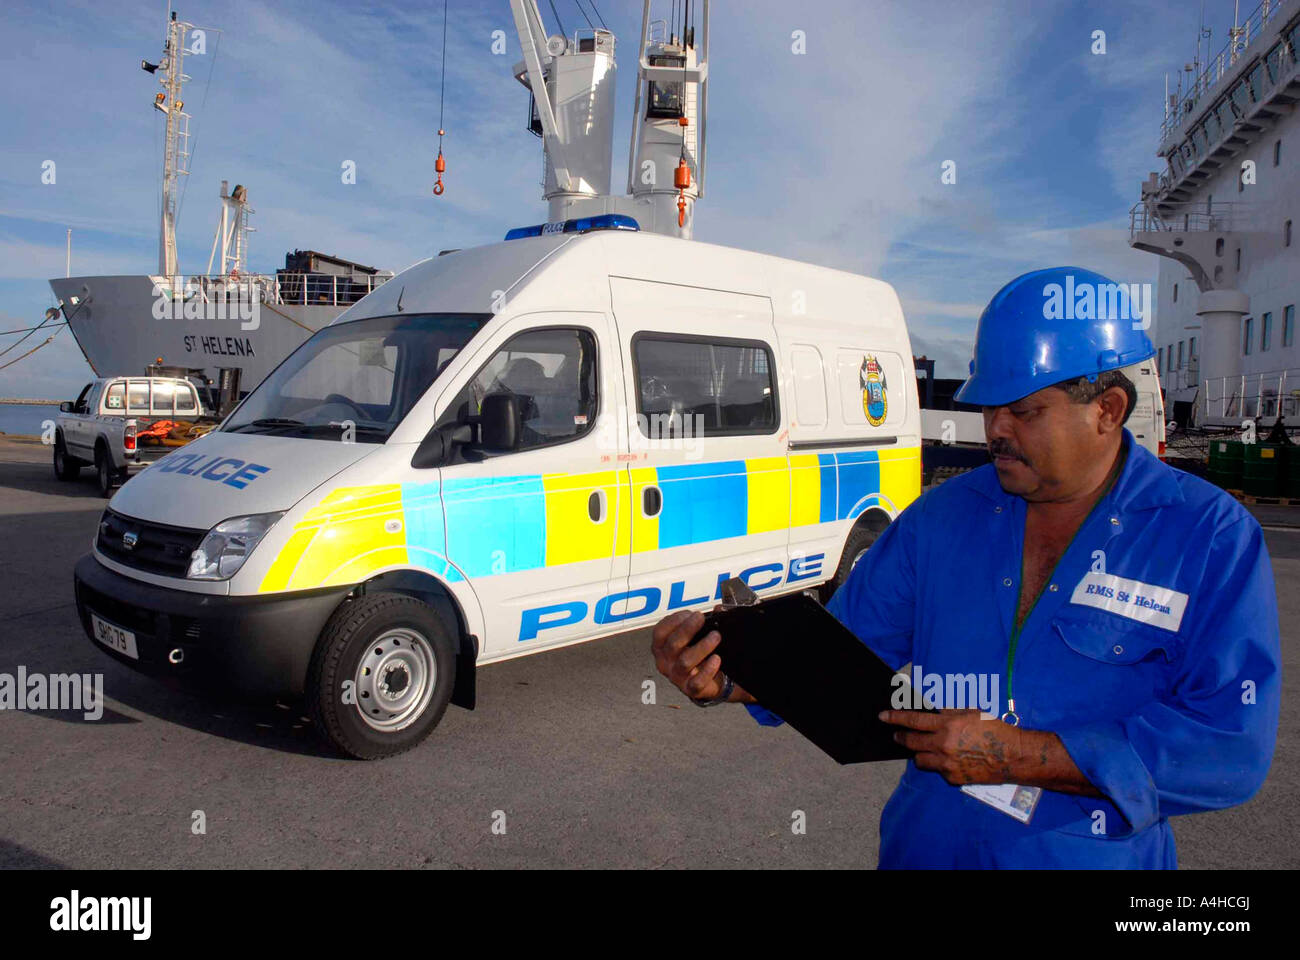 Polizei van wird auf St. Helena-Schiff im Portland Hafen in Dorset, Großbritannien für den Transport auf der Insel geladen Stockfoto